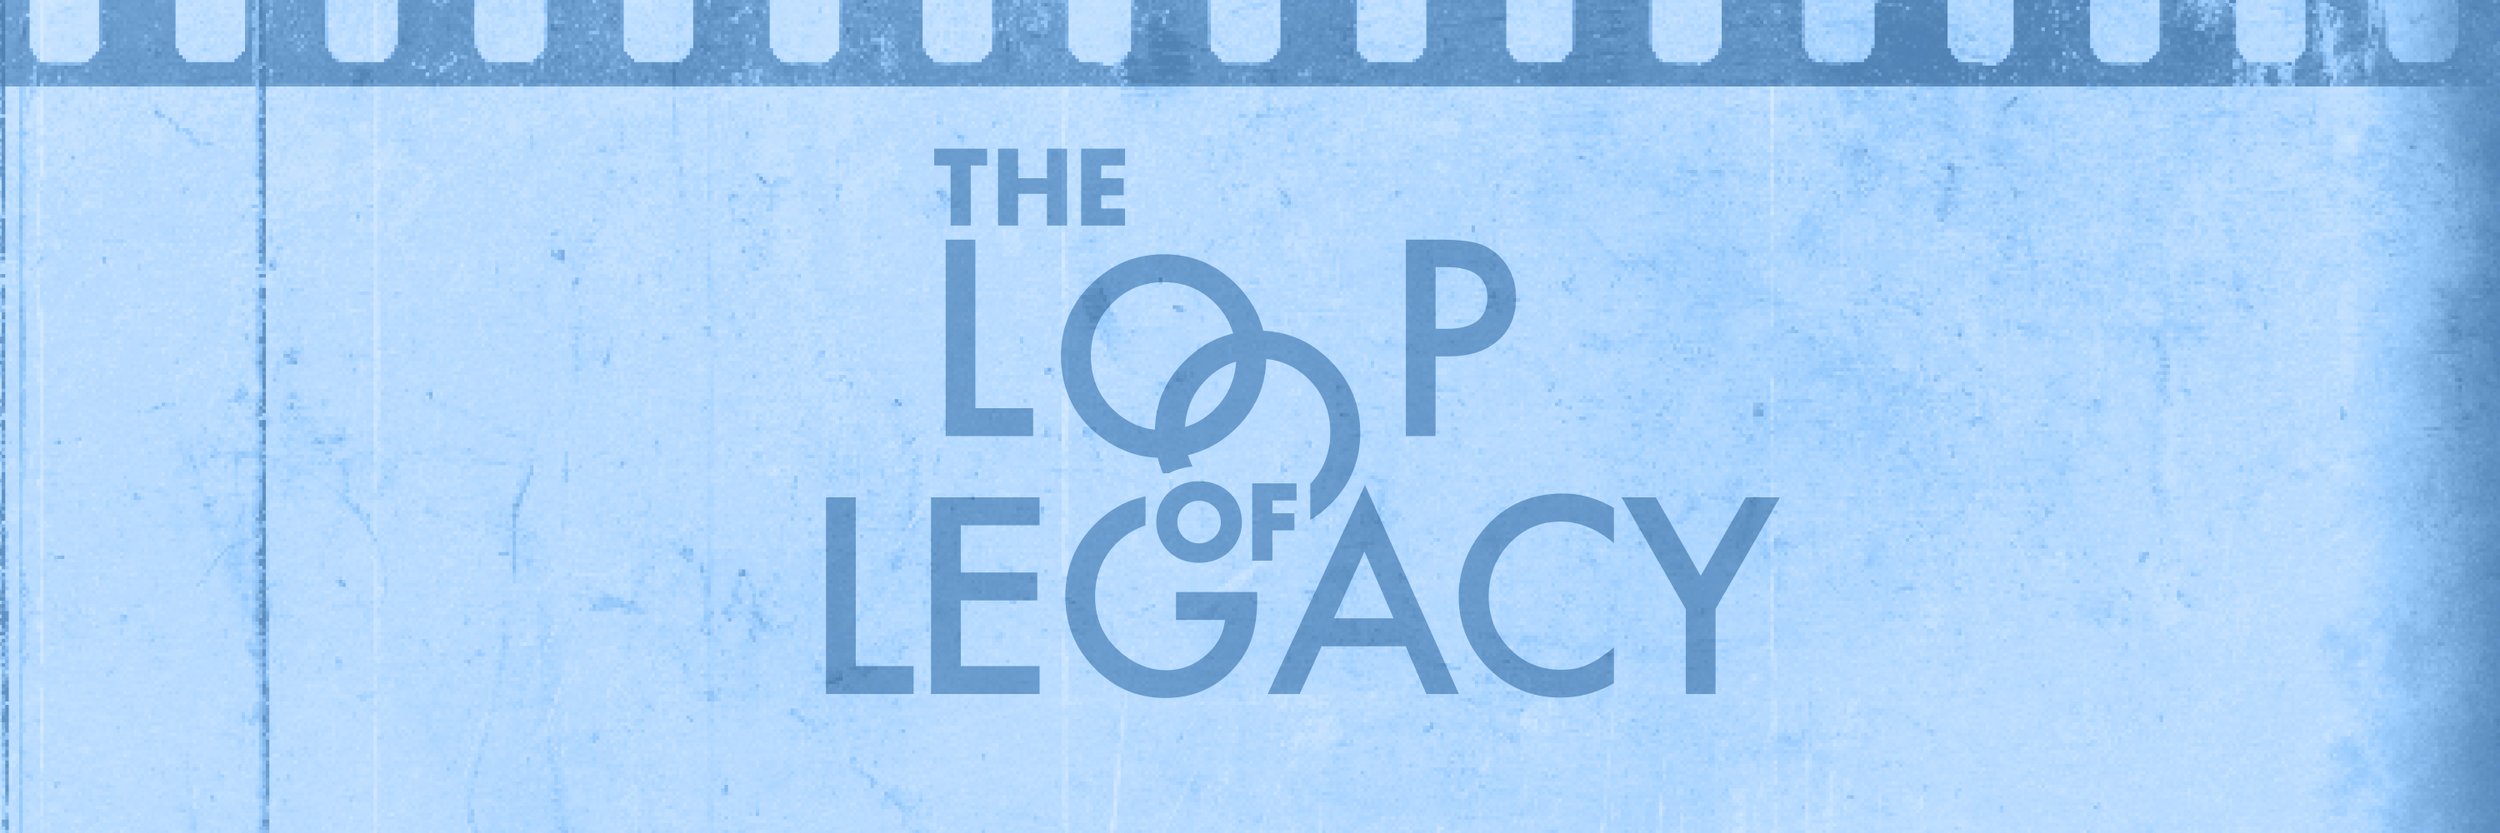   The Loop Legacy 25 años creando nuestra historia Webinar: Los Originales    REGISTER NOW - FREE  